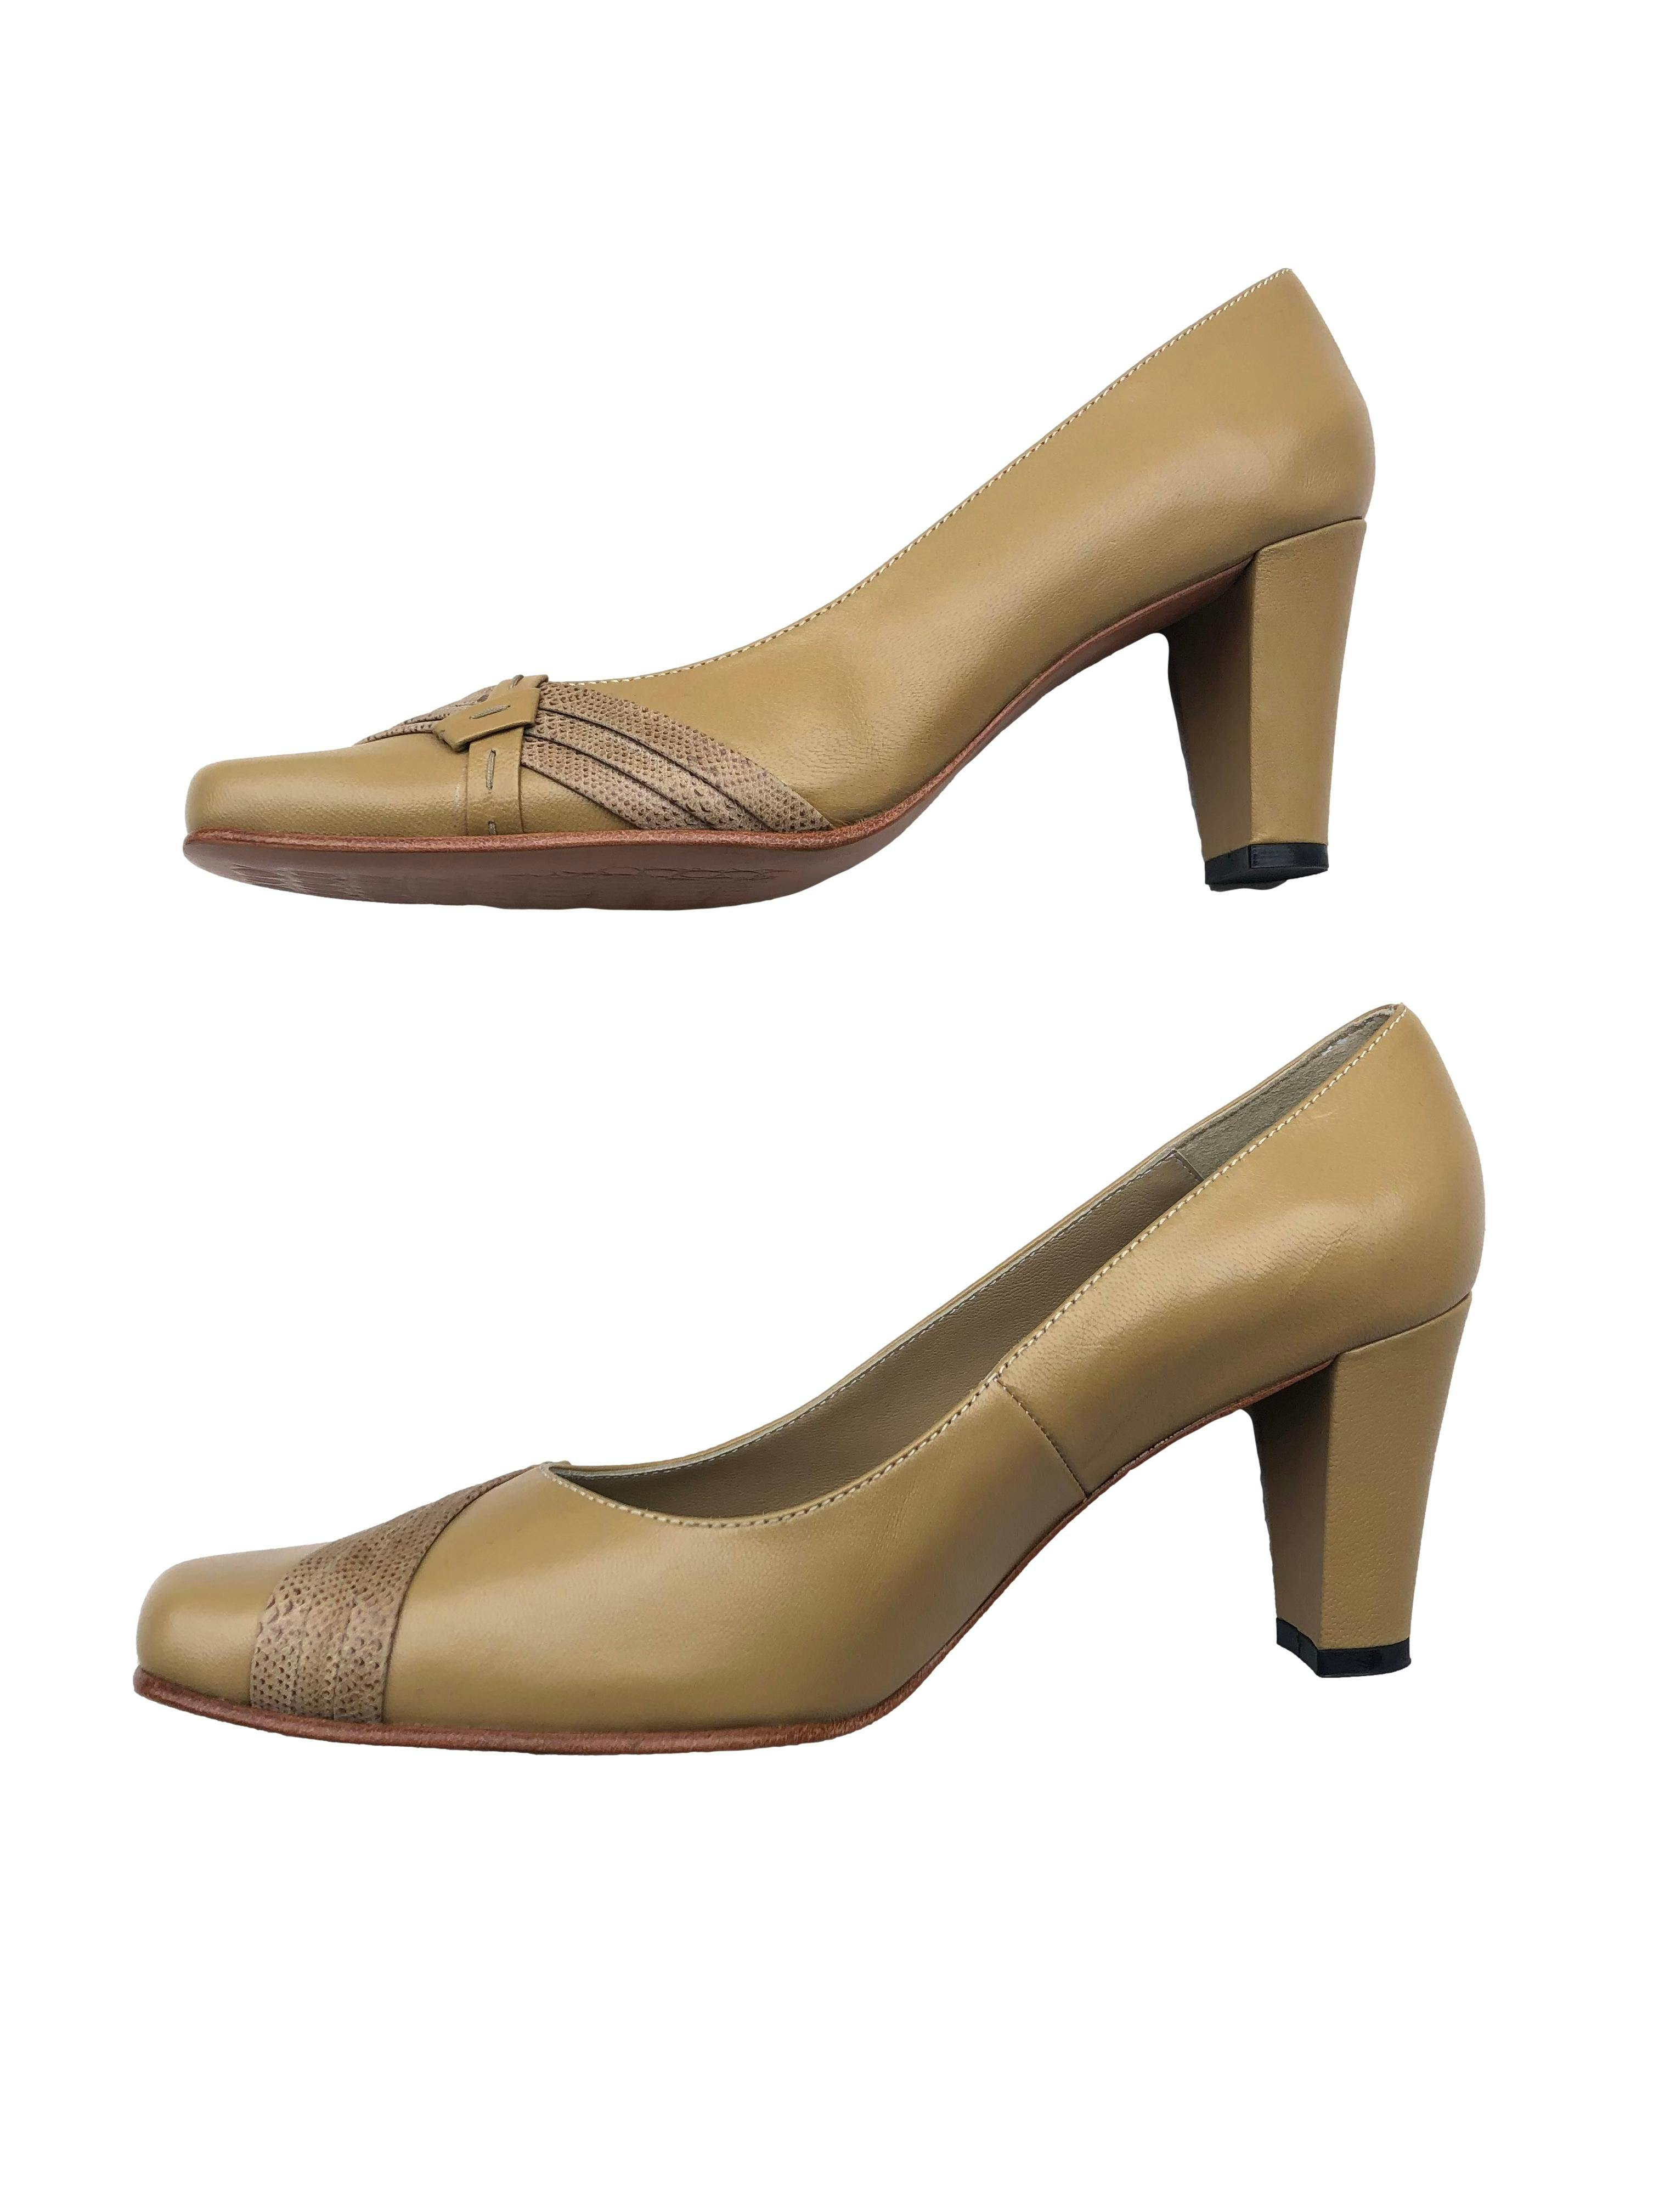 Zapatos beige Tanguis 100% cuero, punta cuadrada con taco grueso 8cm. Estado como nuevo.